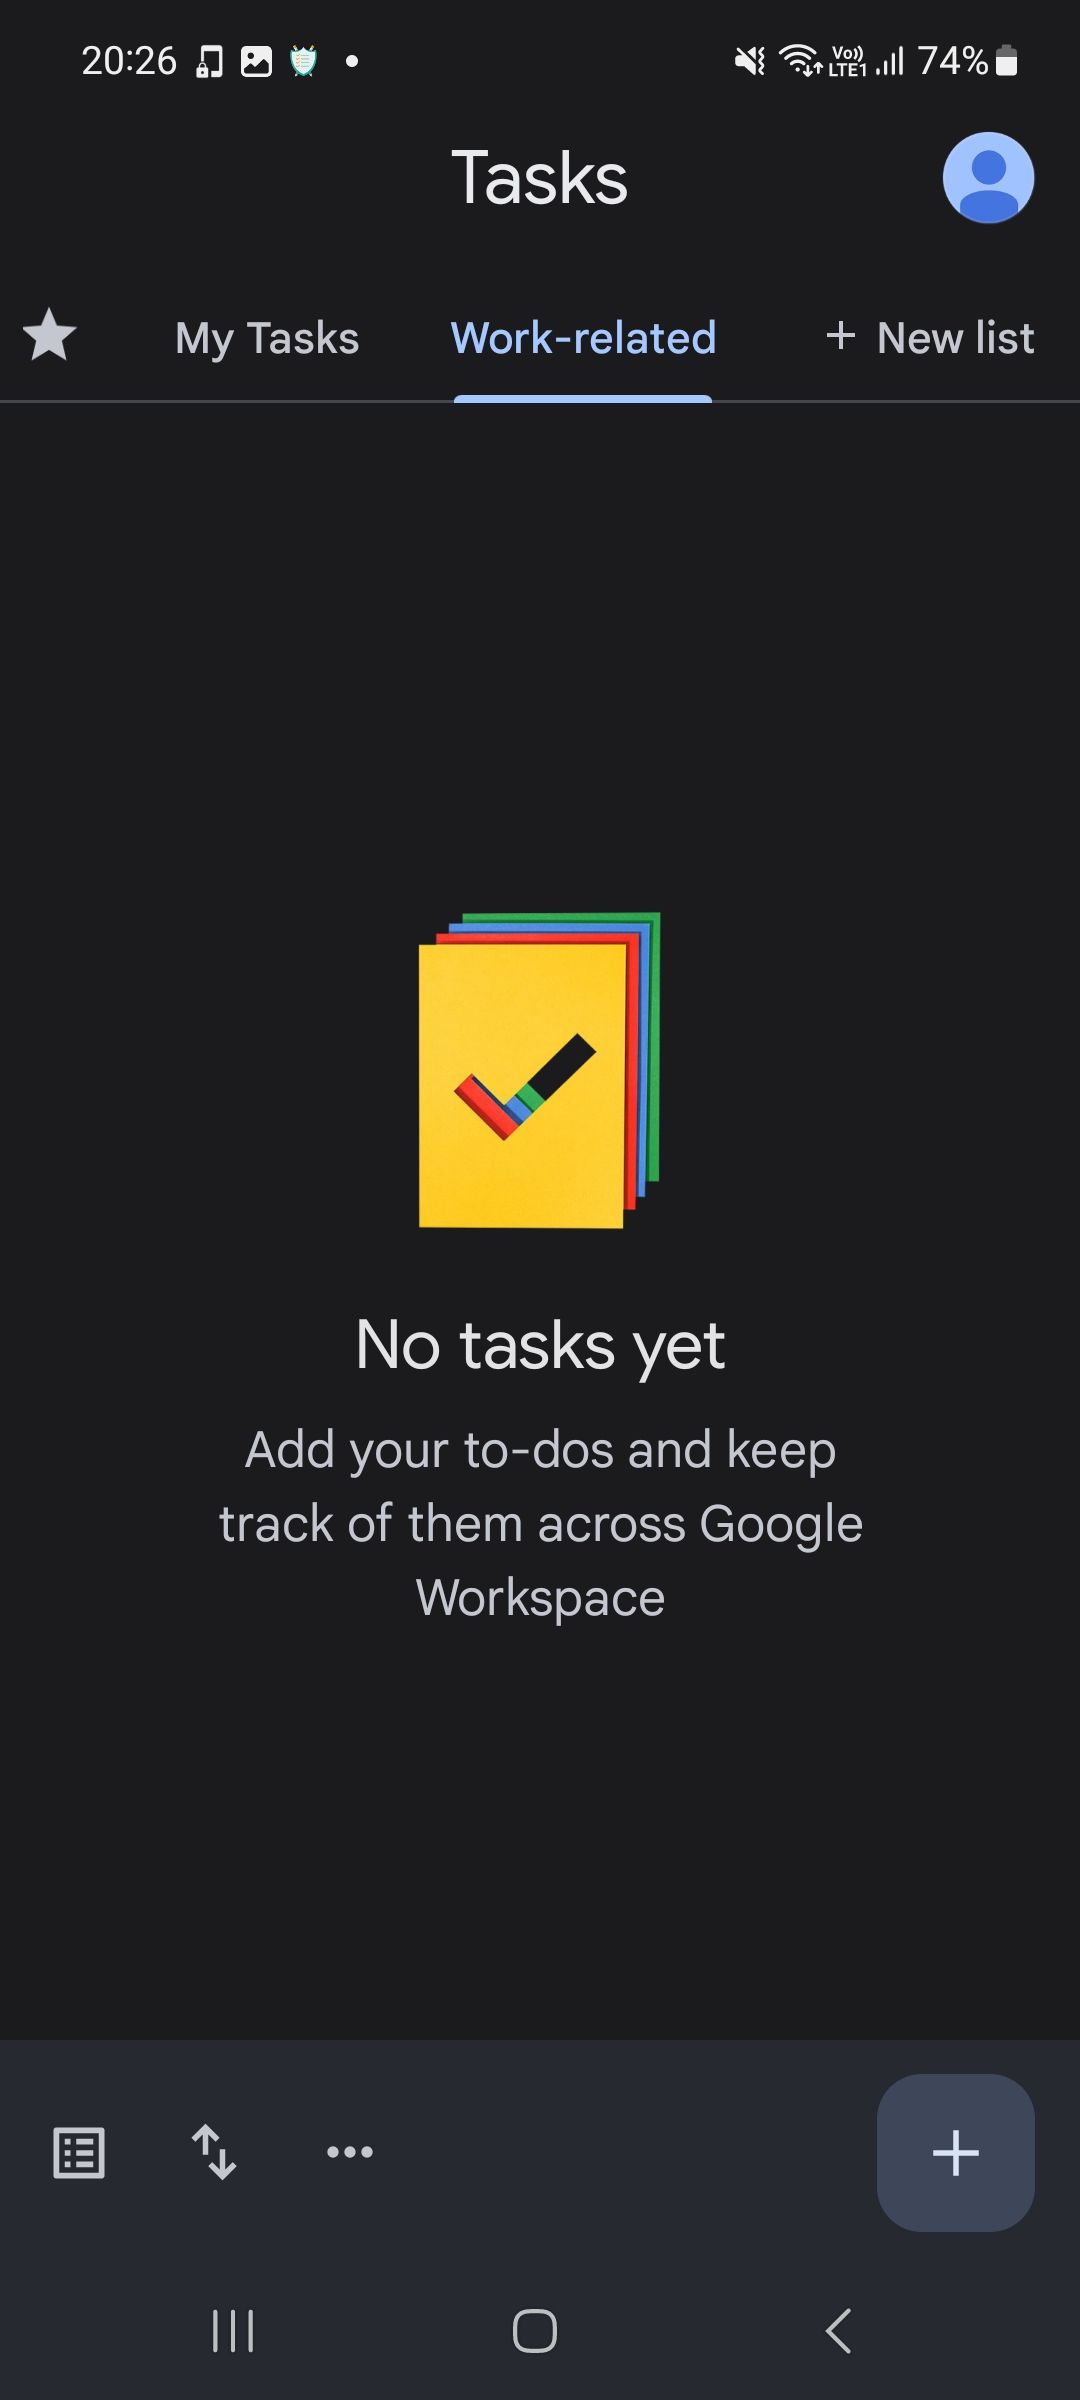 New task list in Google Tasks